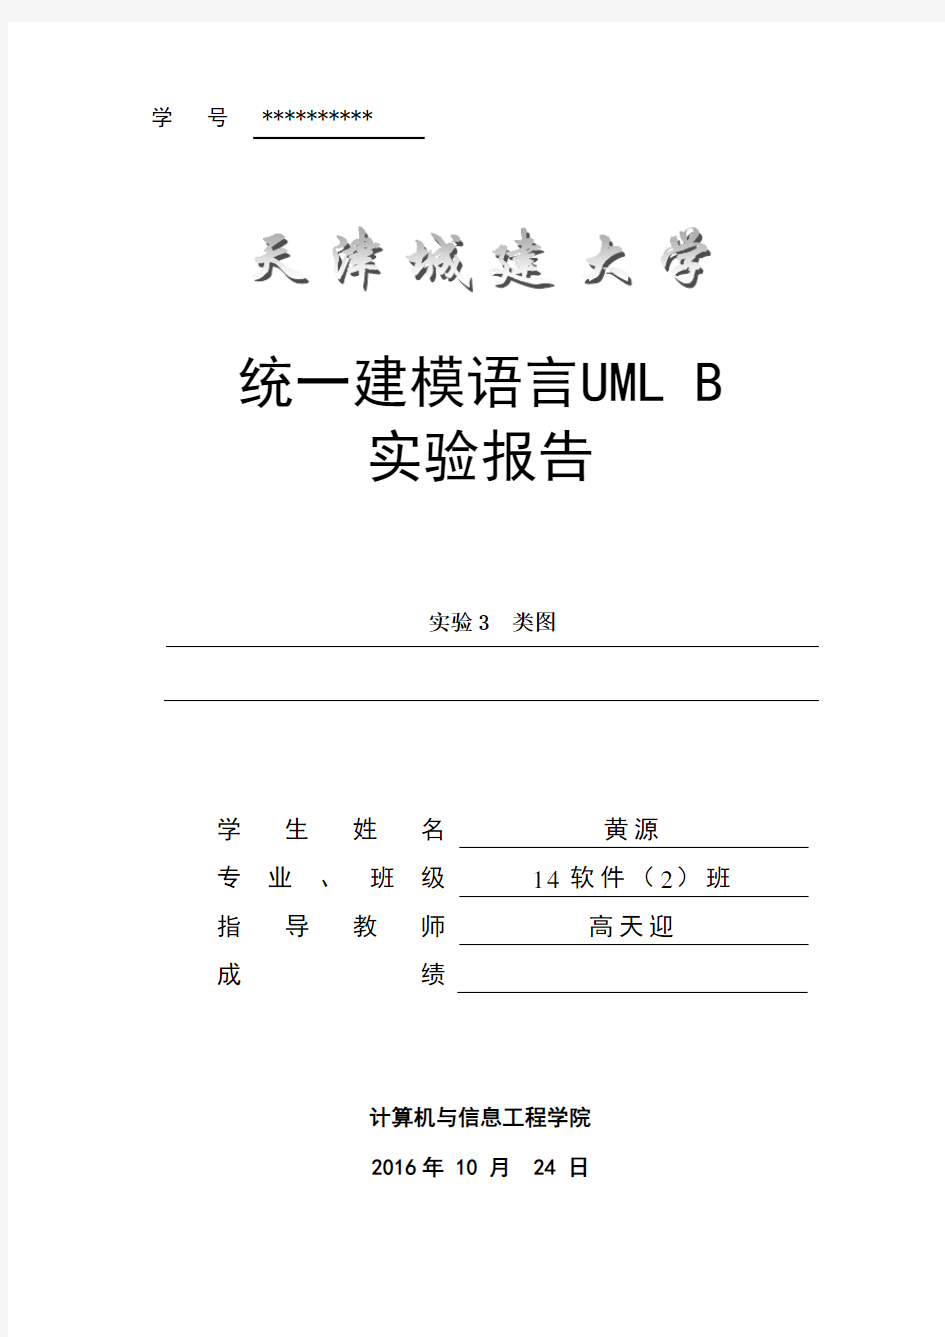 图书管理系统类图(UML)